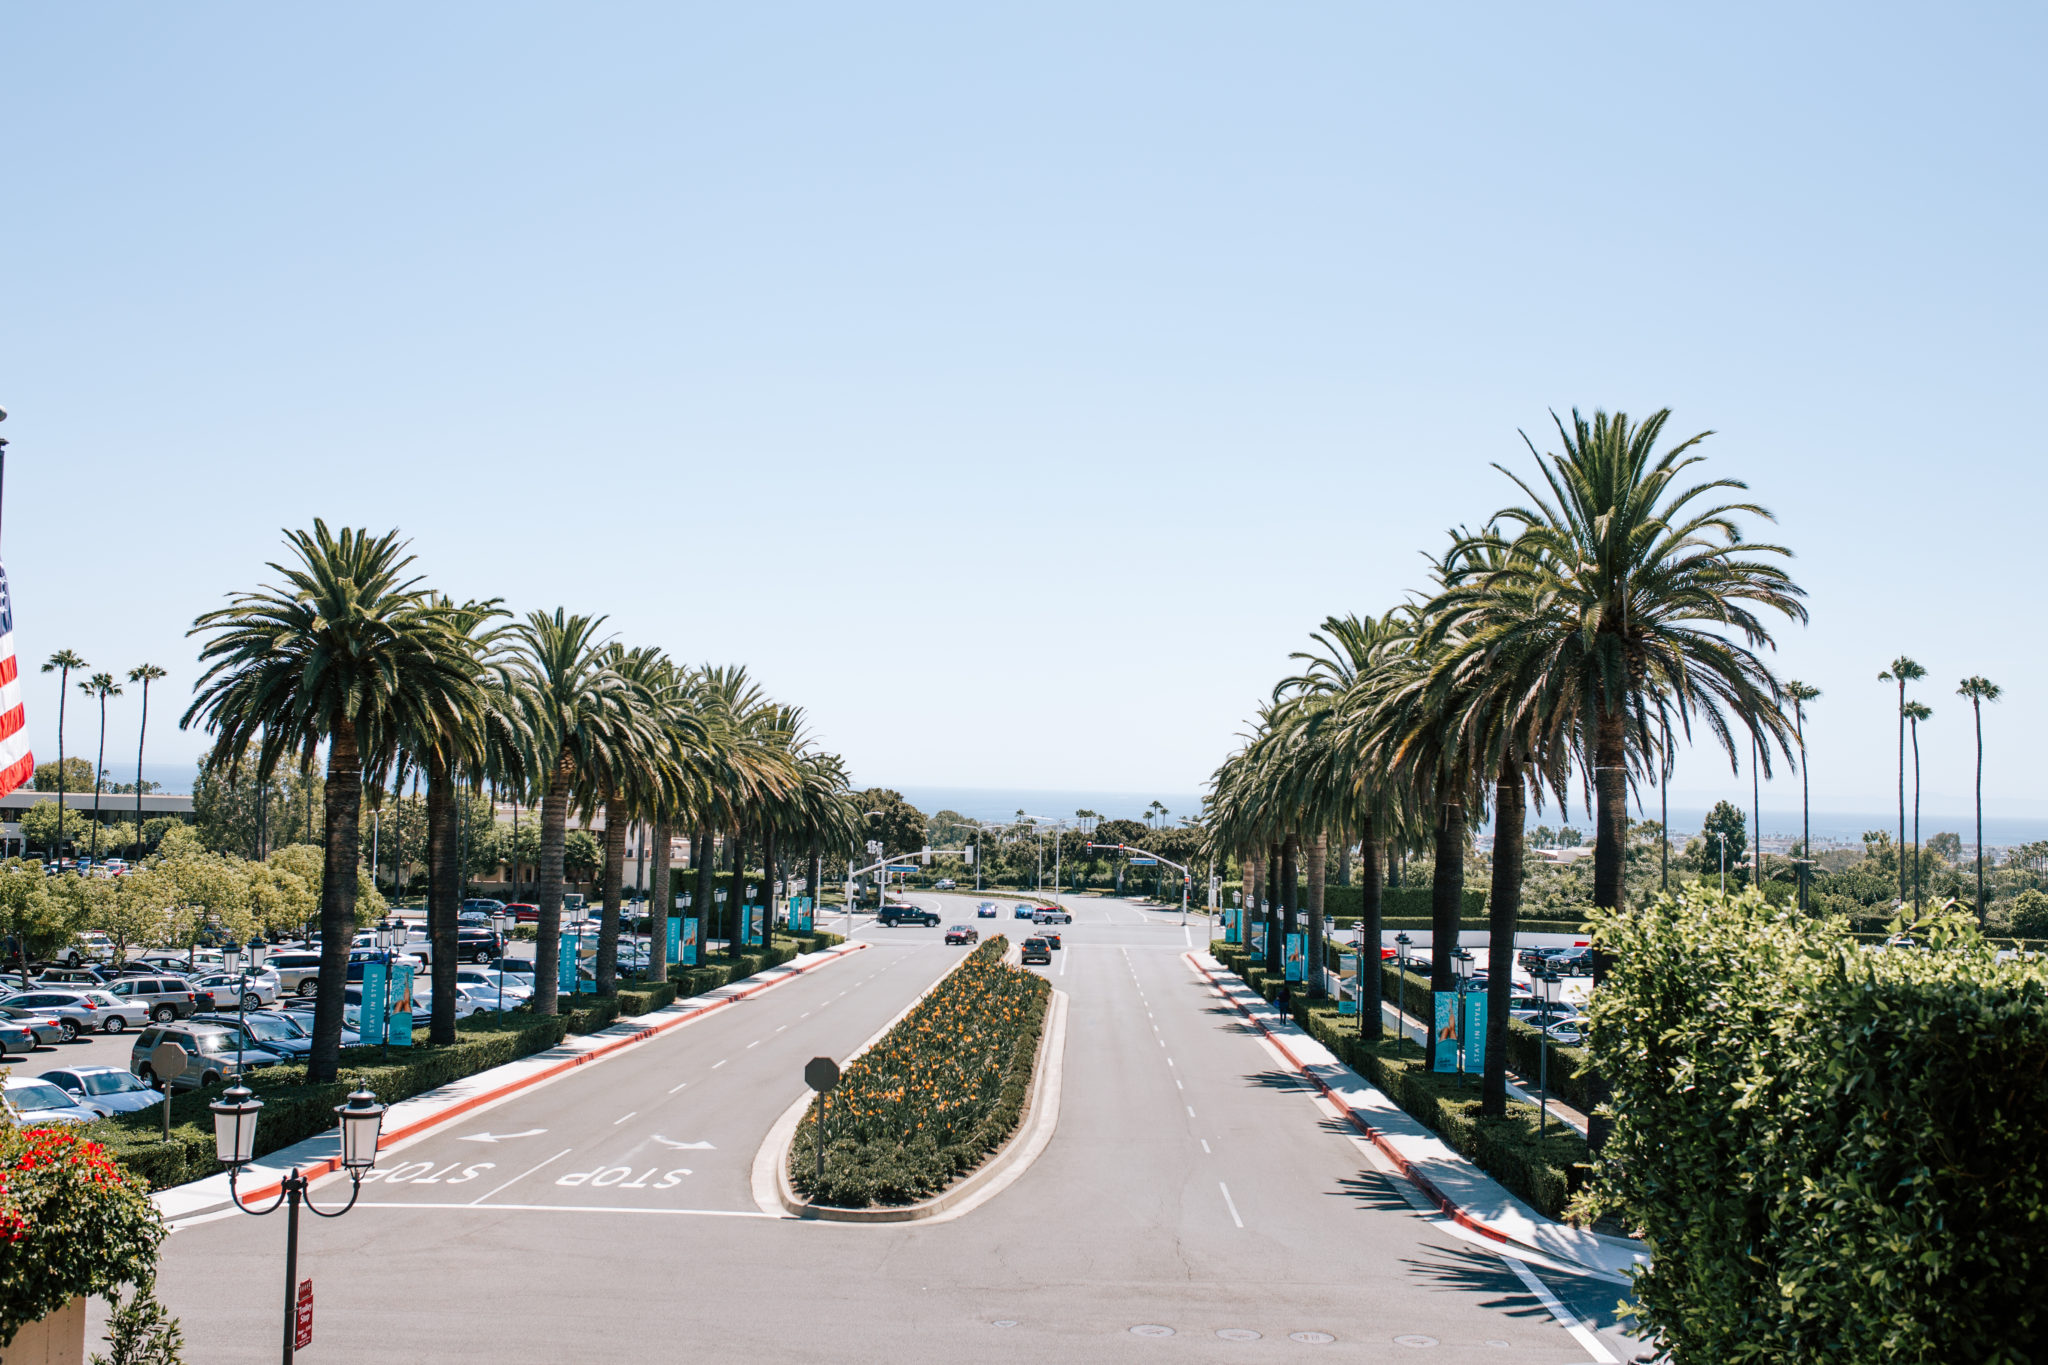 Fashion Island Newport Beach, California open air mall wit…